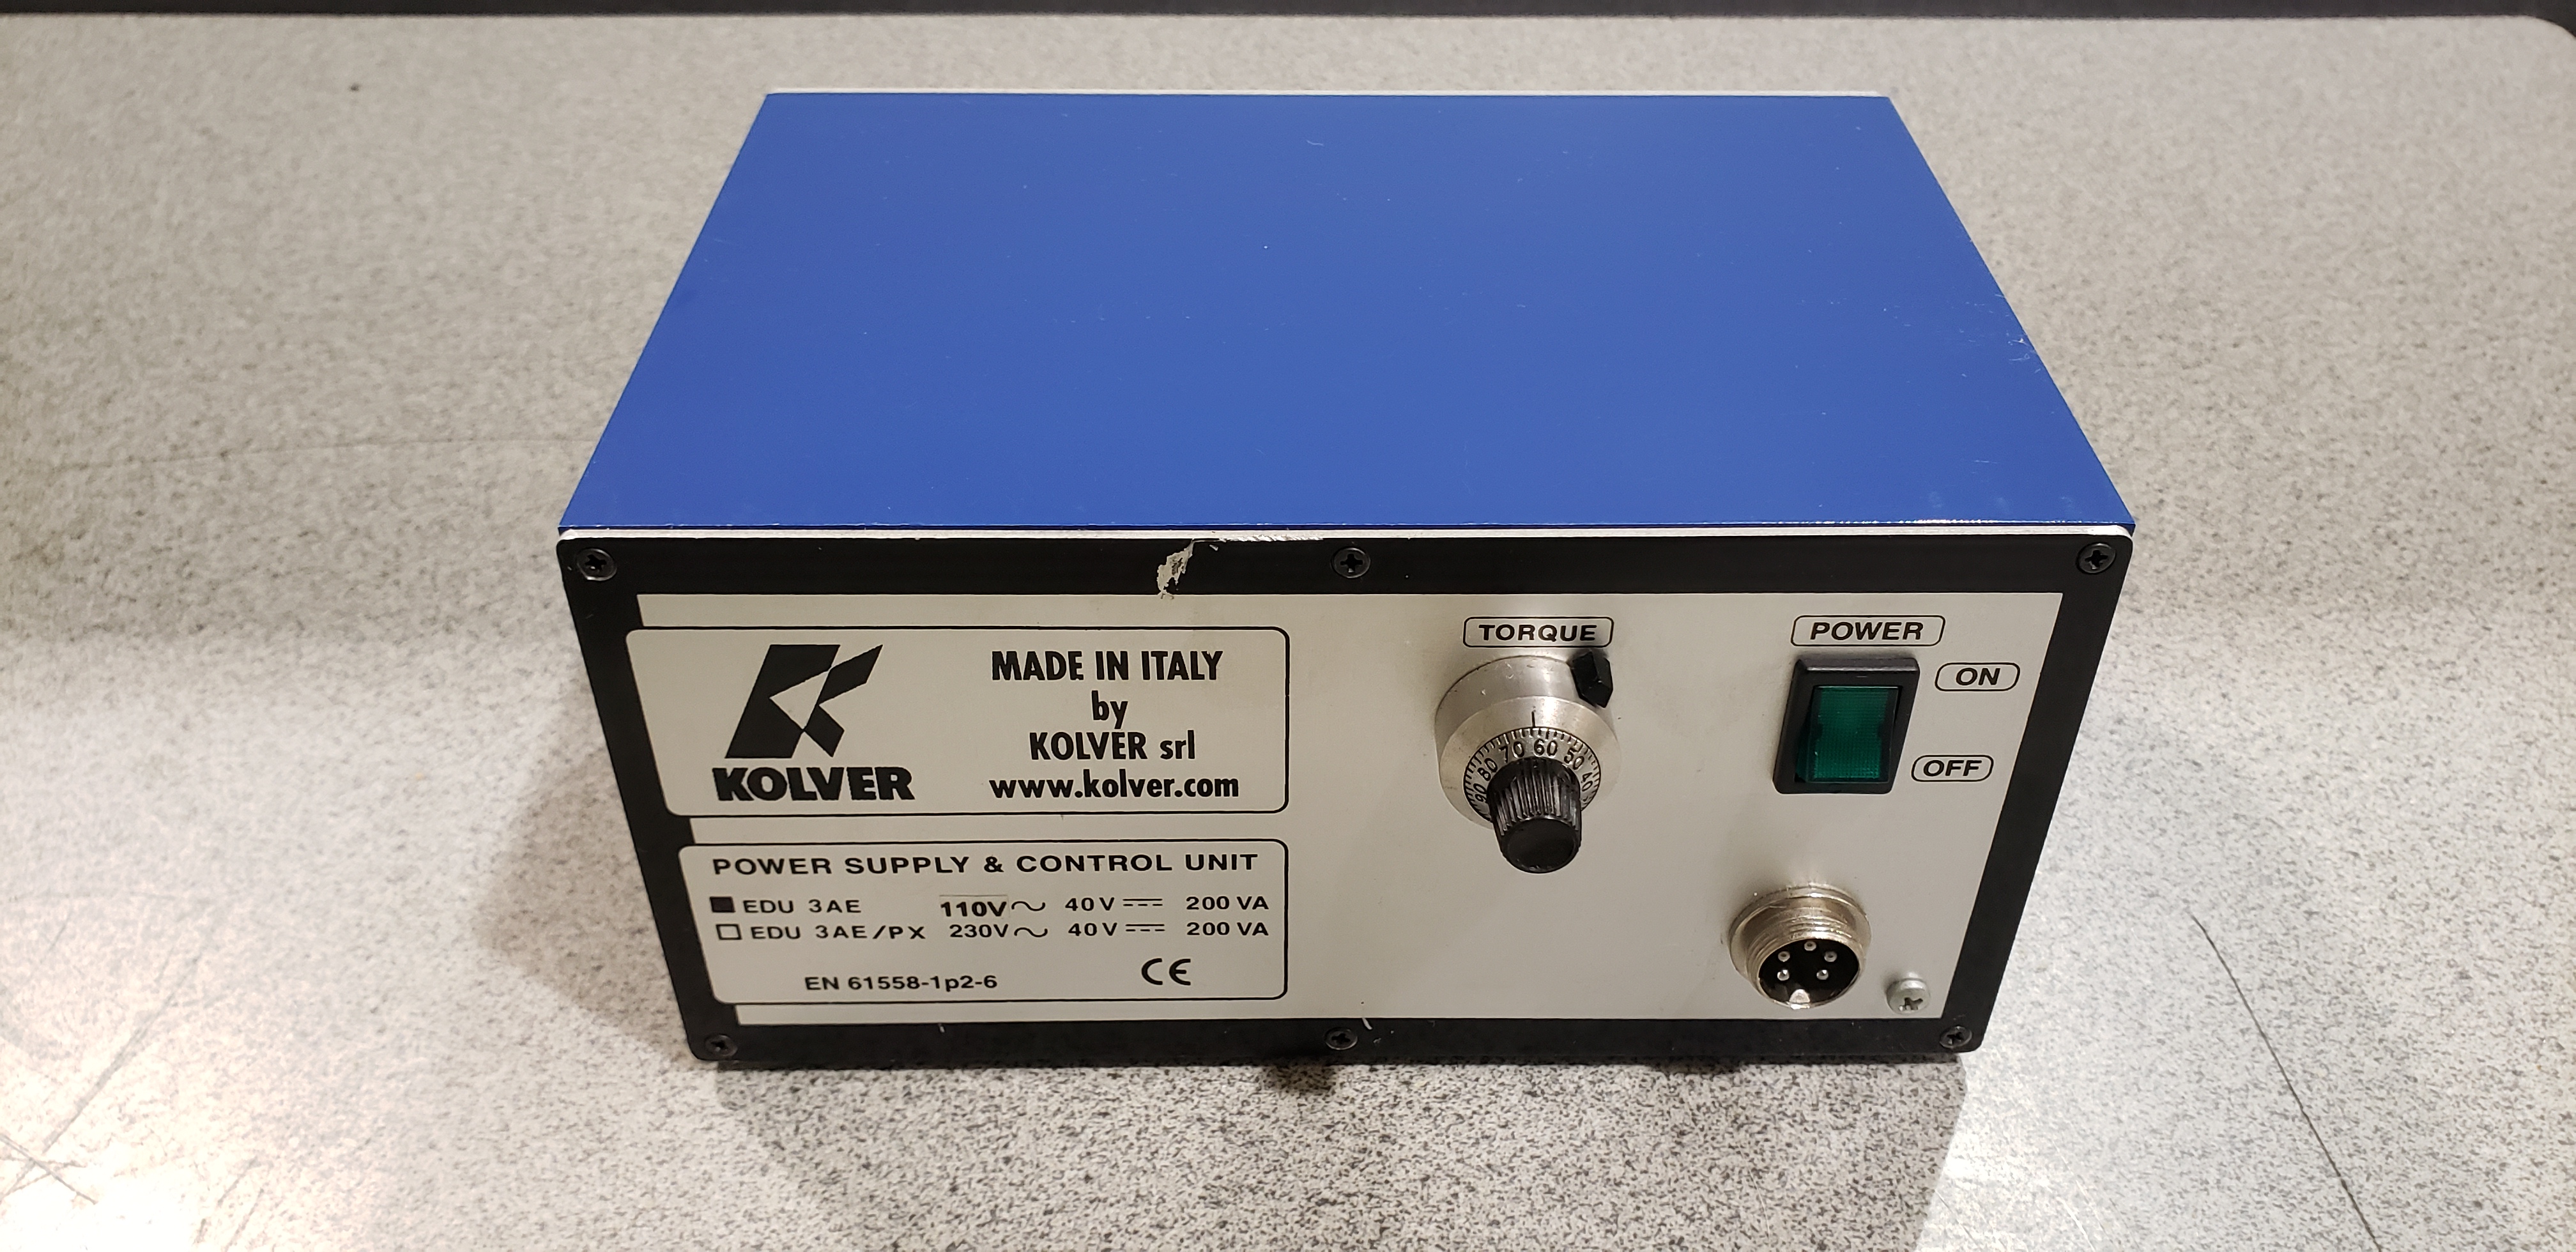 Kolver EN-61558-1P2-6  Power Supply & Control Unit